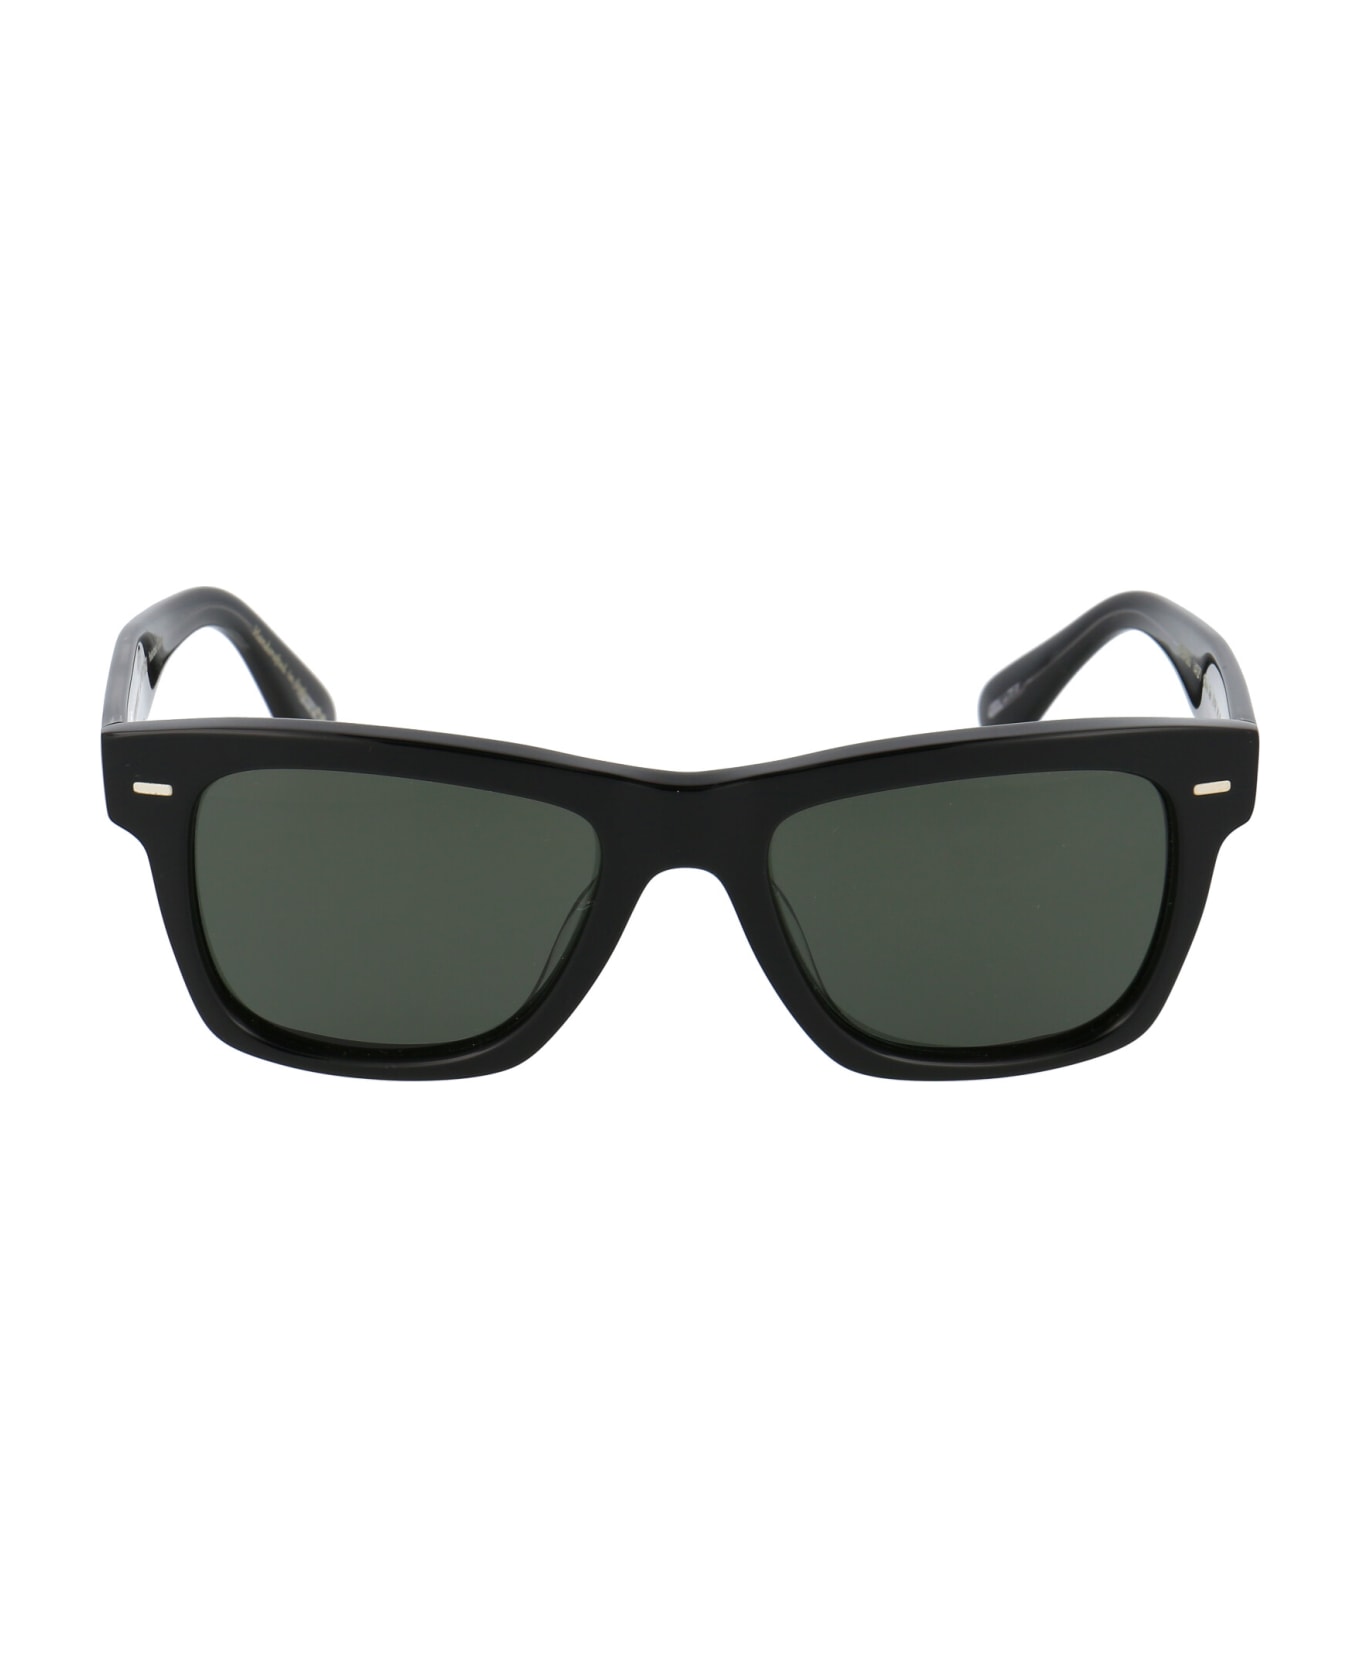 Oliver Peoples Oliver Sun Sunglasses - 1492P1 BLACK